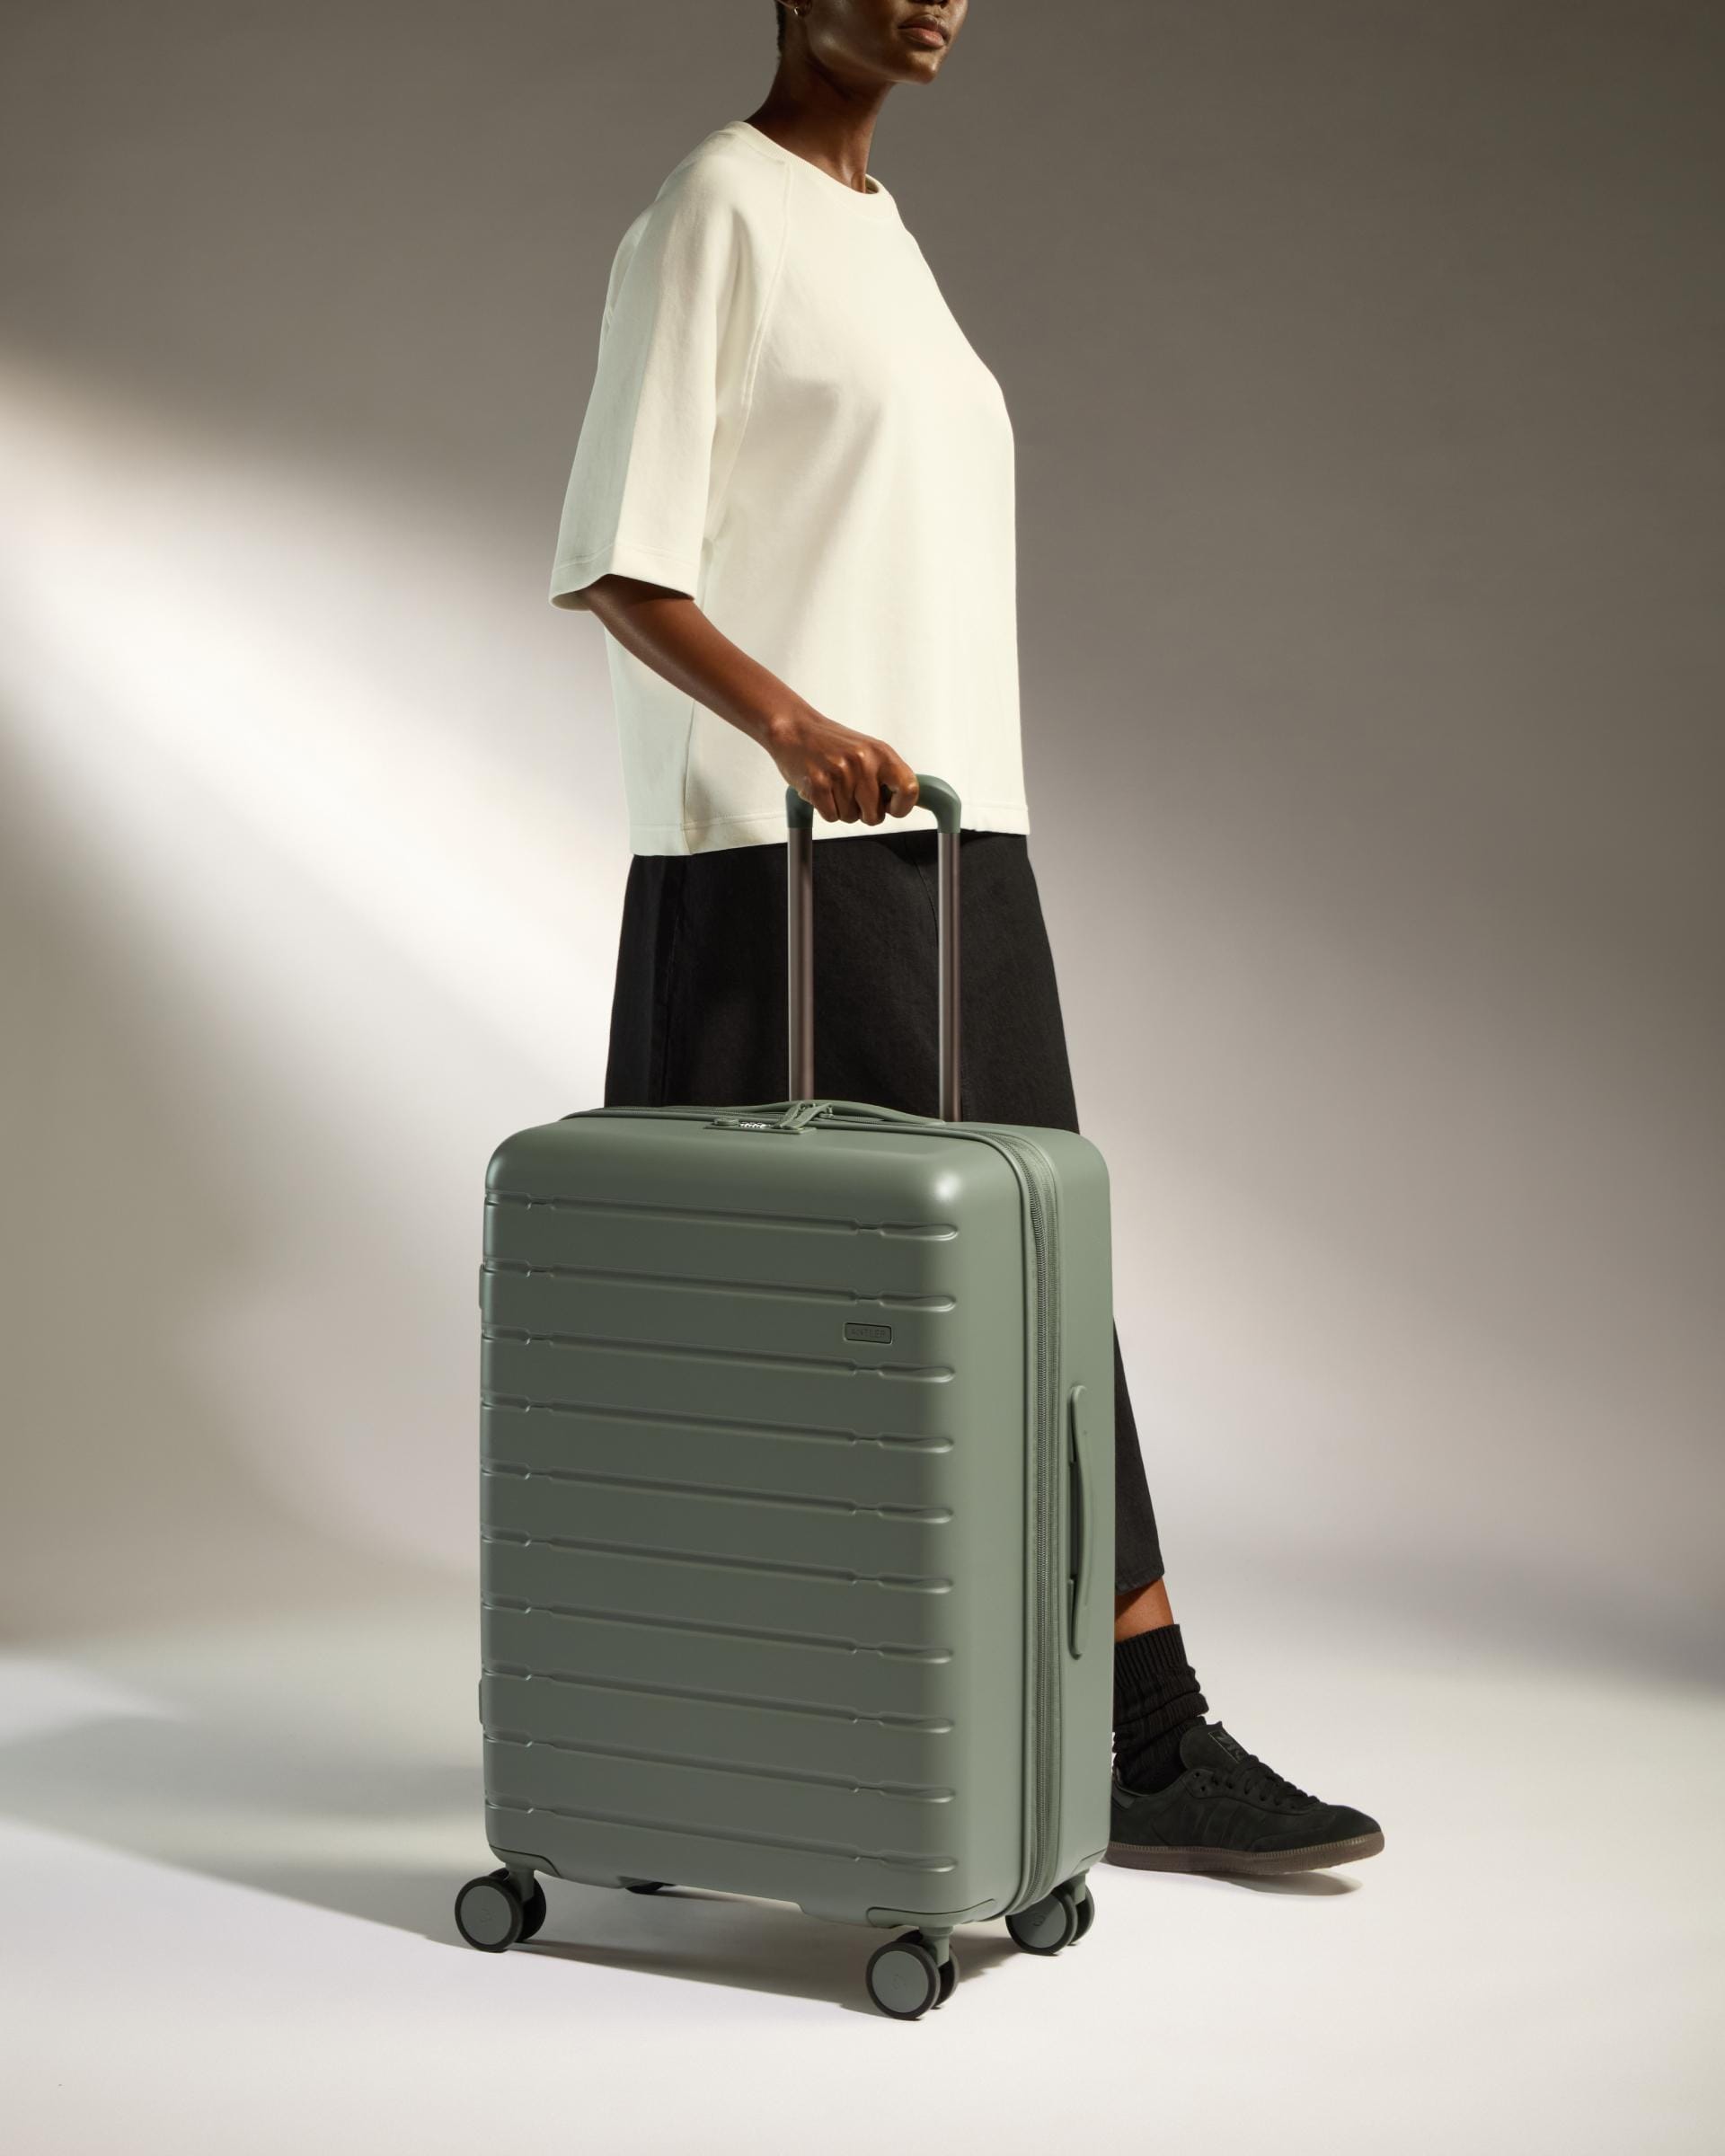 Antler Luggage -  Stamford 2.0 medium in field green - Hard Suitcases Stamford 2.0 Medium Suitcase Green | Hard Luggage | Antler UK